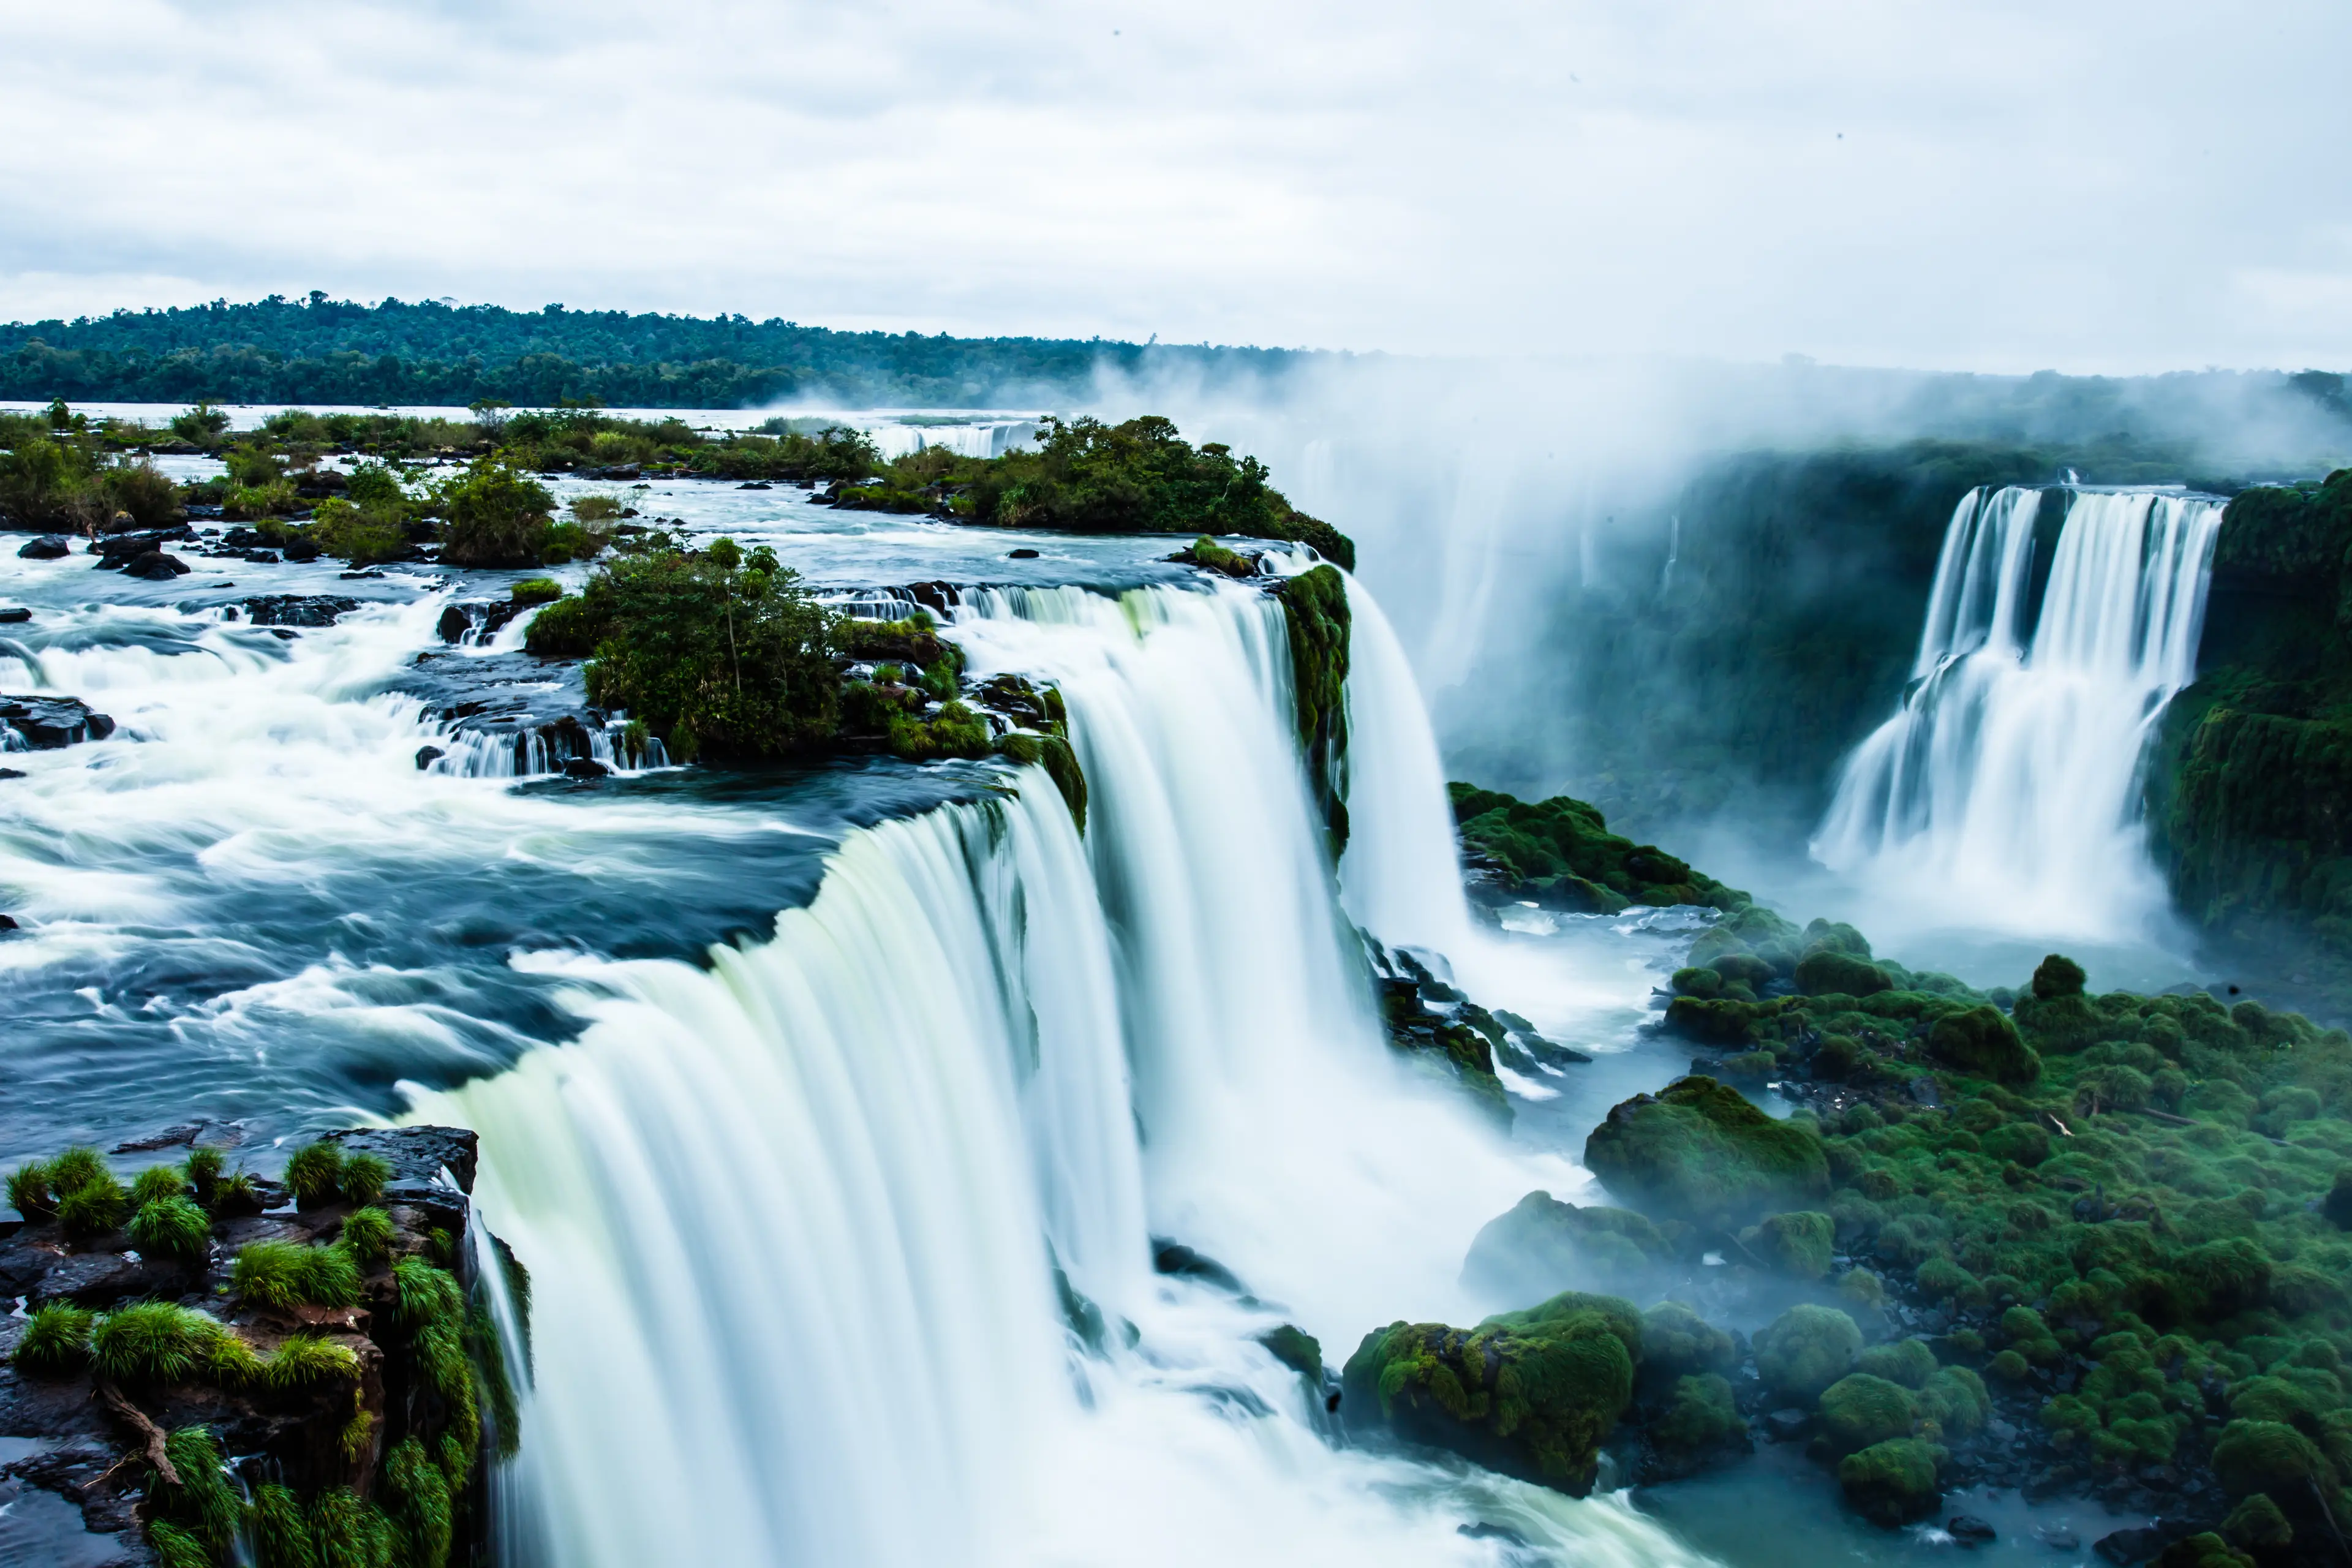 Iguassu Falls, the largest waterfalls of the world, Brazilian side